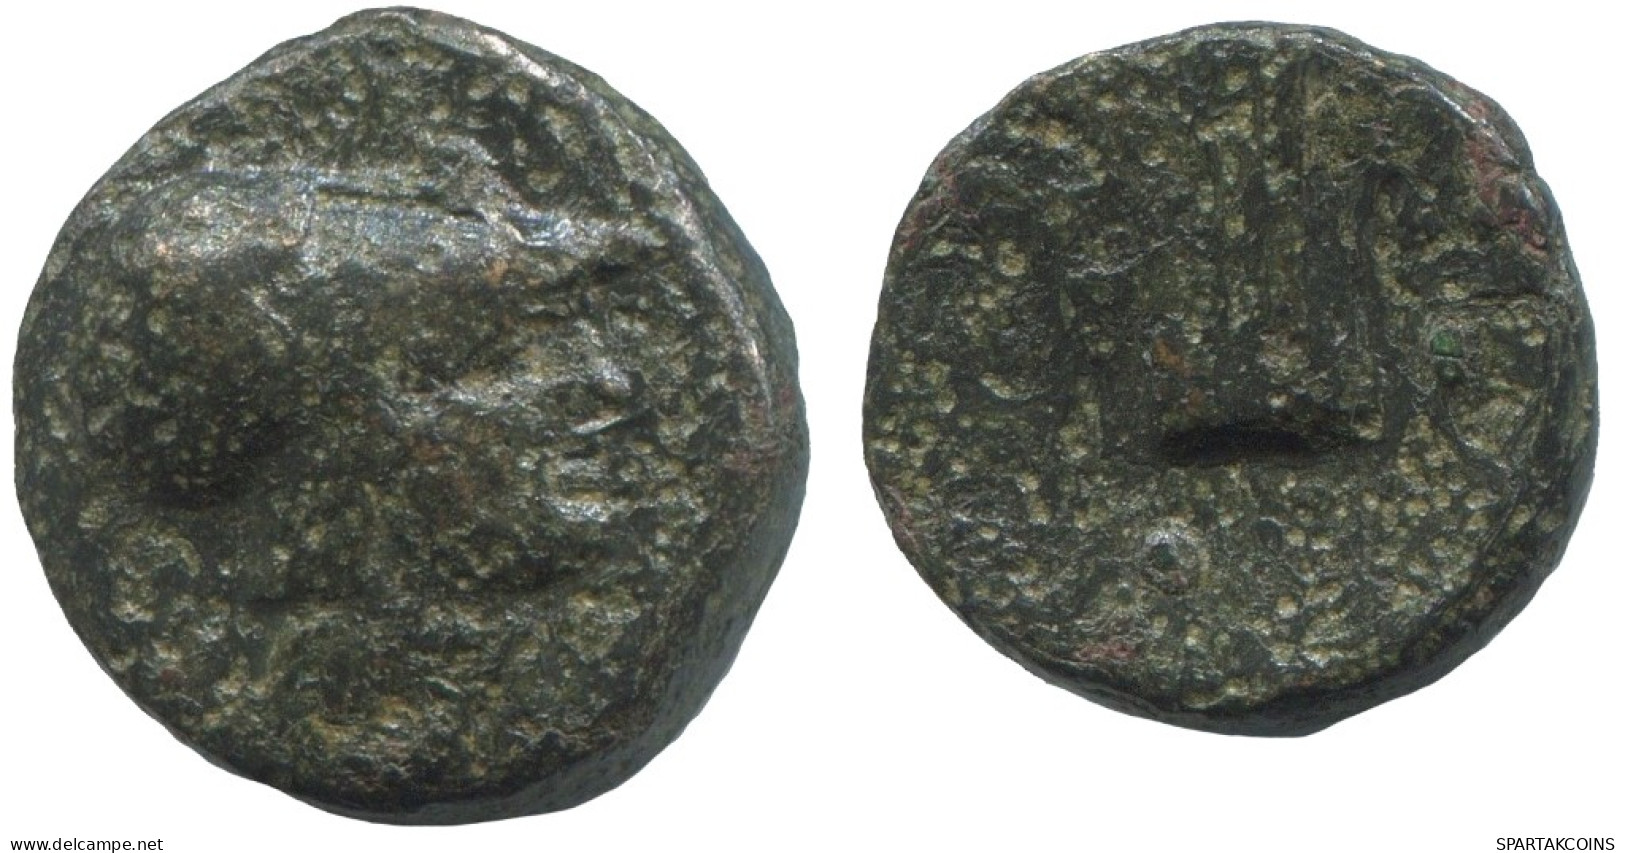 Antiguo Auténtico Original GRIEGO Moneda 4g/16mm #ANT2514.10.E.A - Griechische Münzen